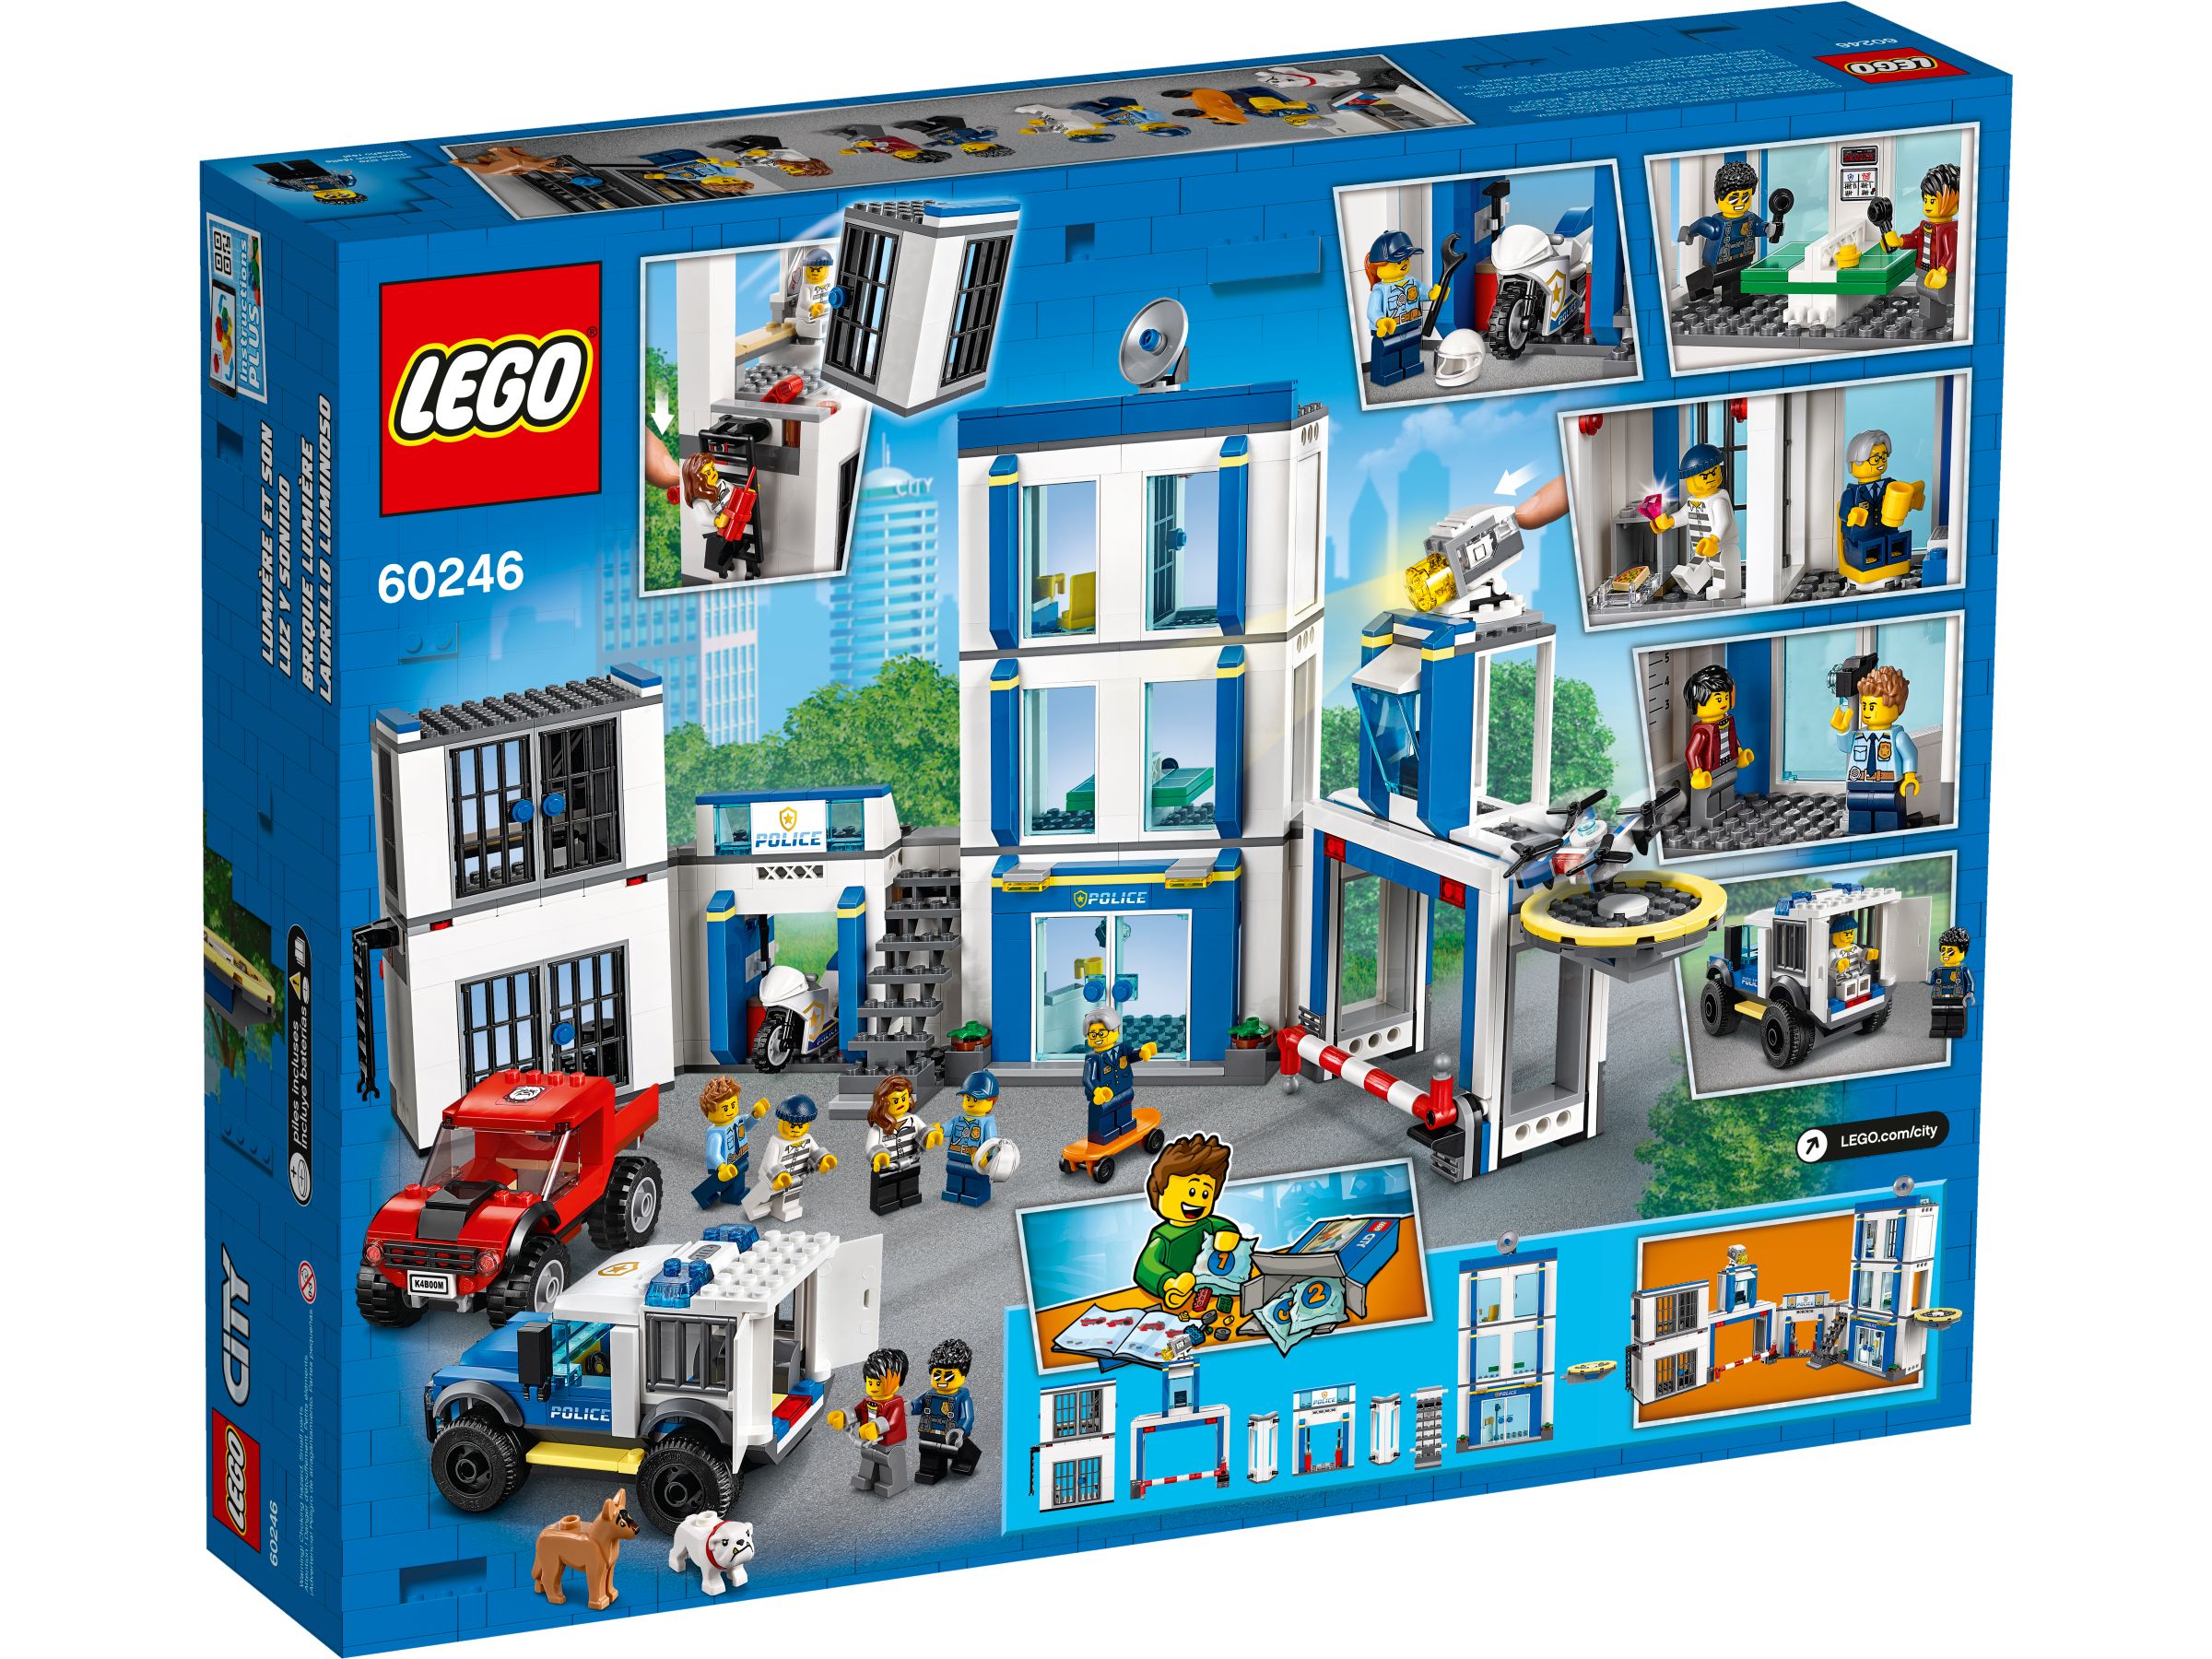 LEGO City 60246 Polizeistation LEGO_60246_alt4.jpg